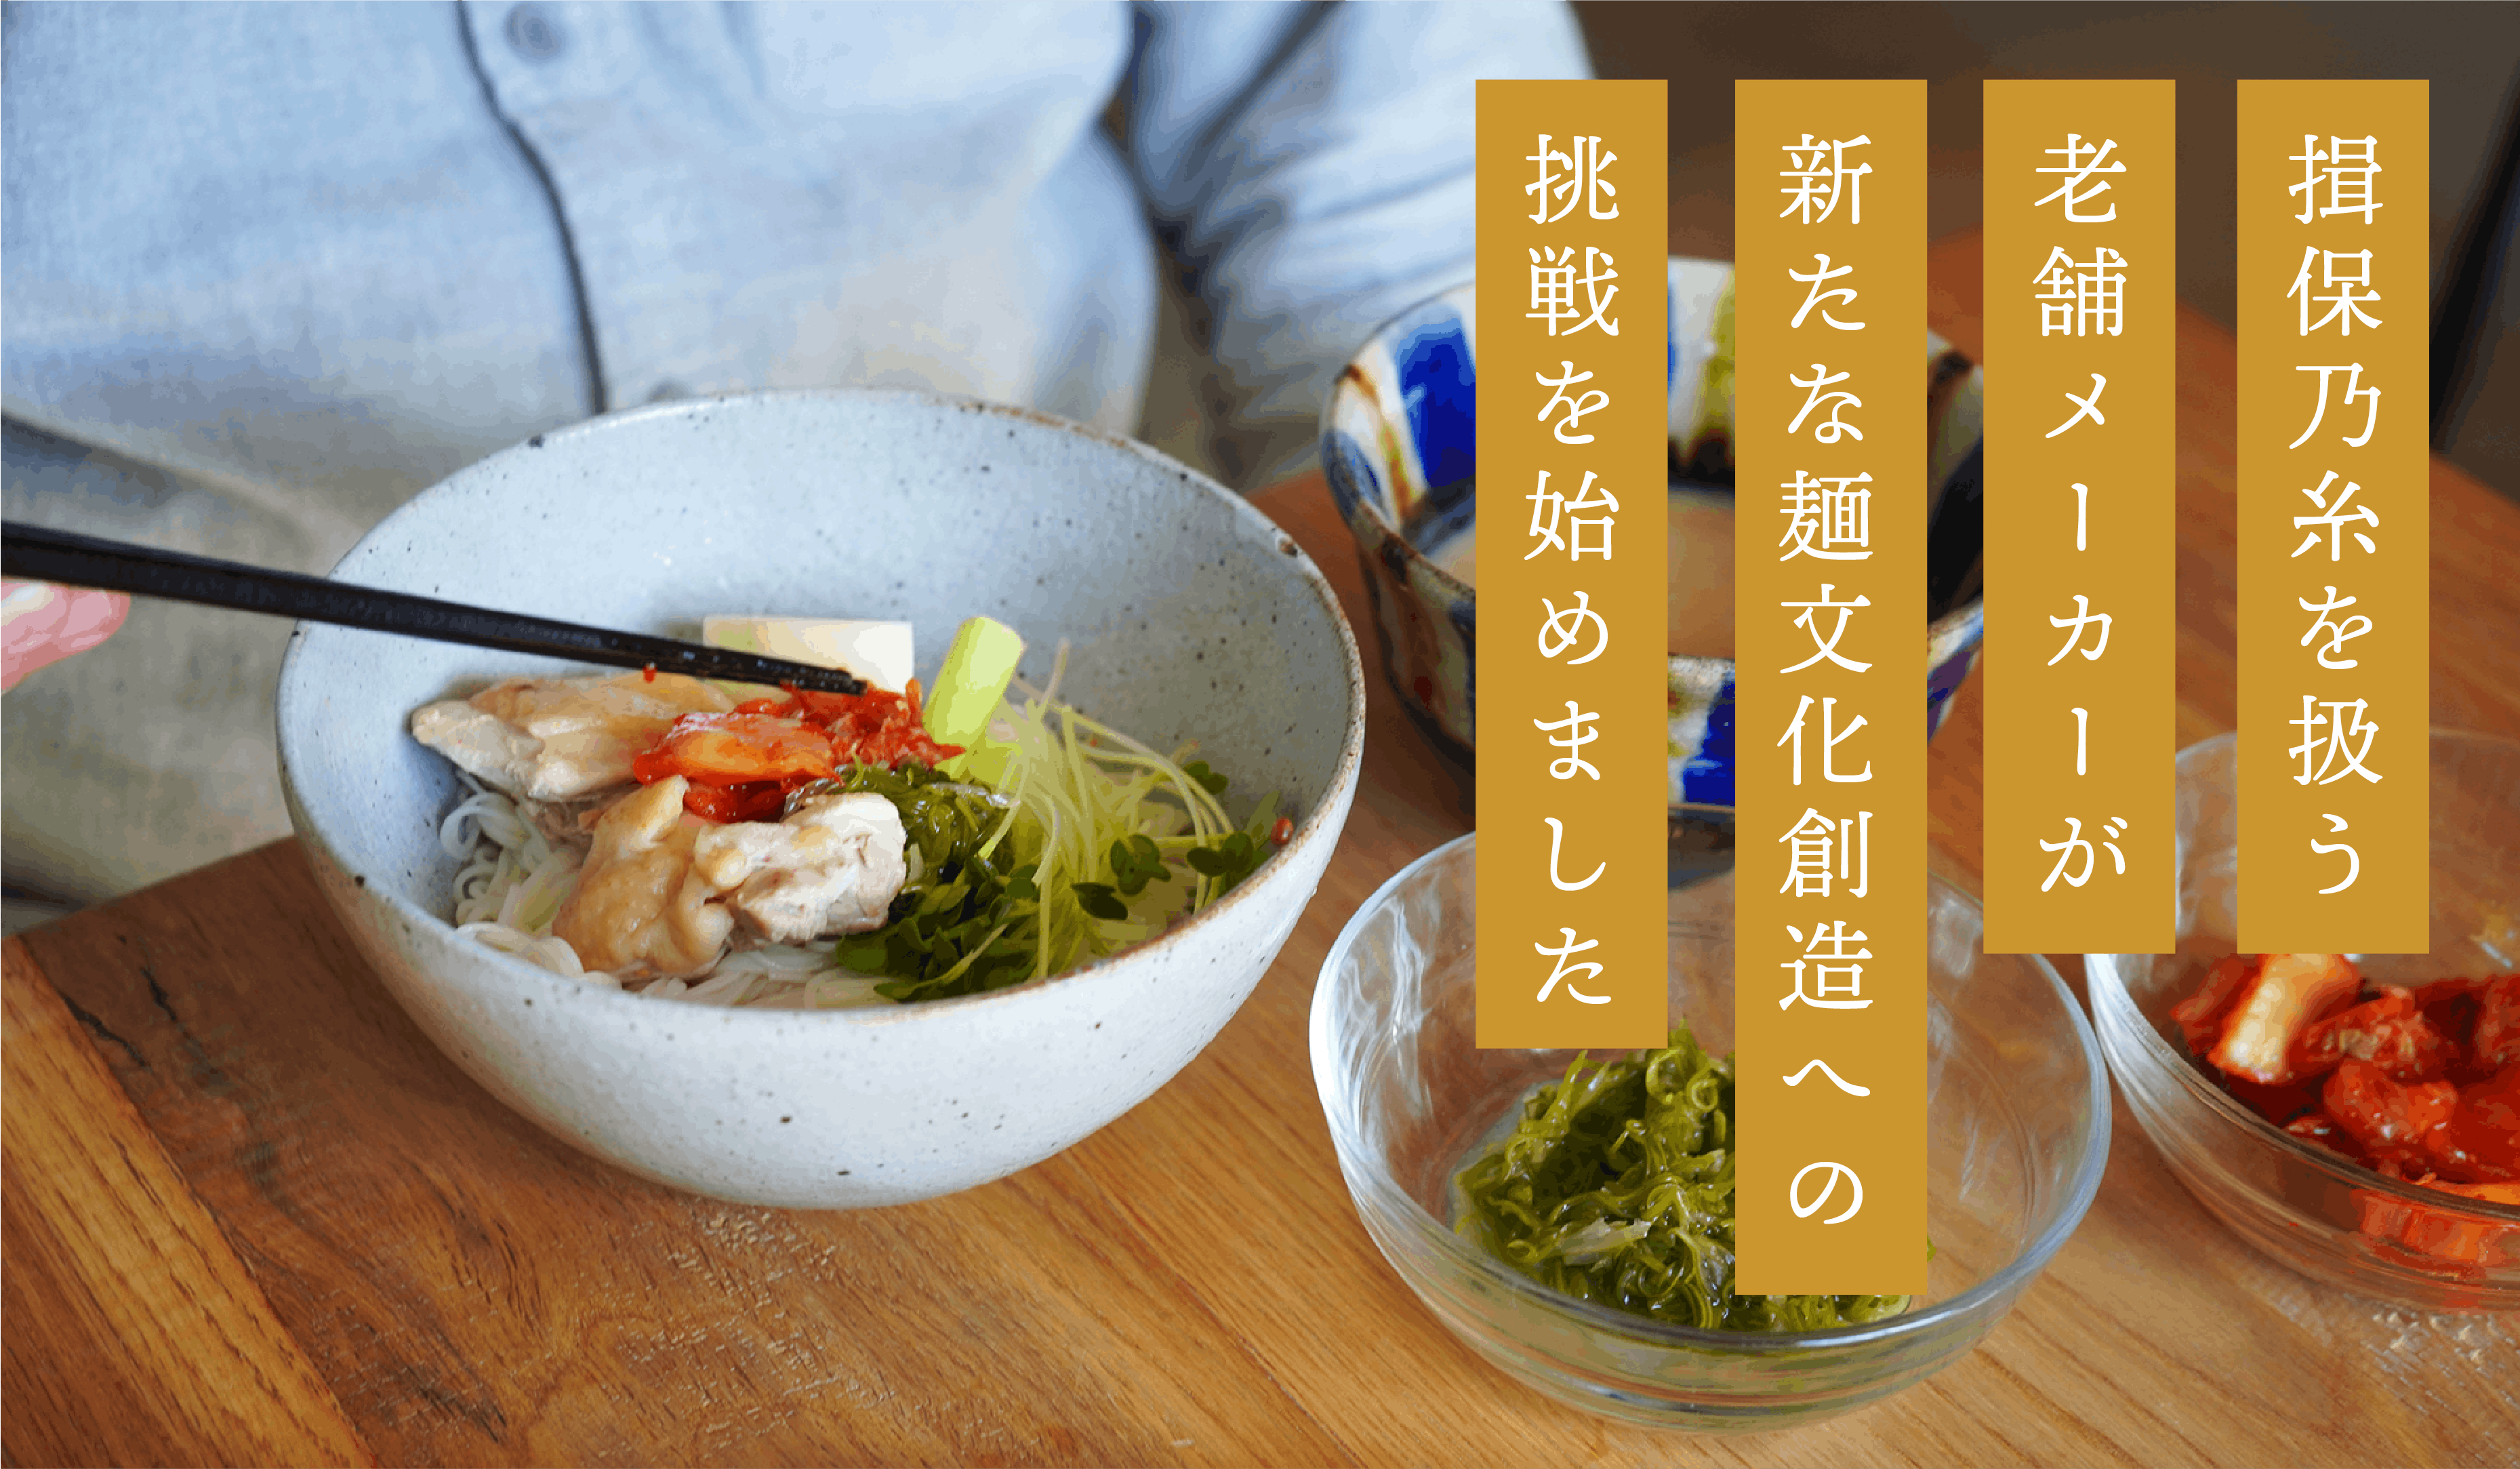 若い世代に新たな“素麺”の食文化を創造したい！　揖保乃糸を扱う老舗メーカーの挑戦　CAMPFIRE　(キャンプファイヤー)